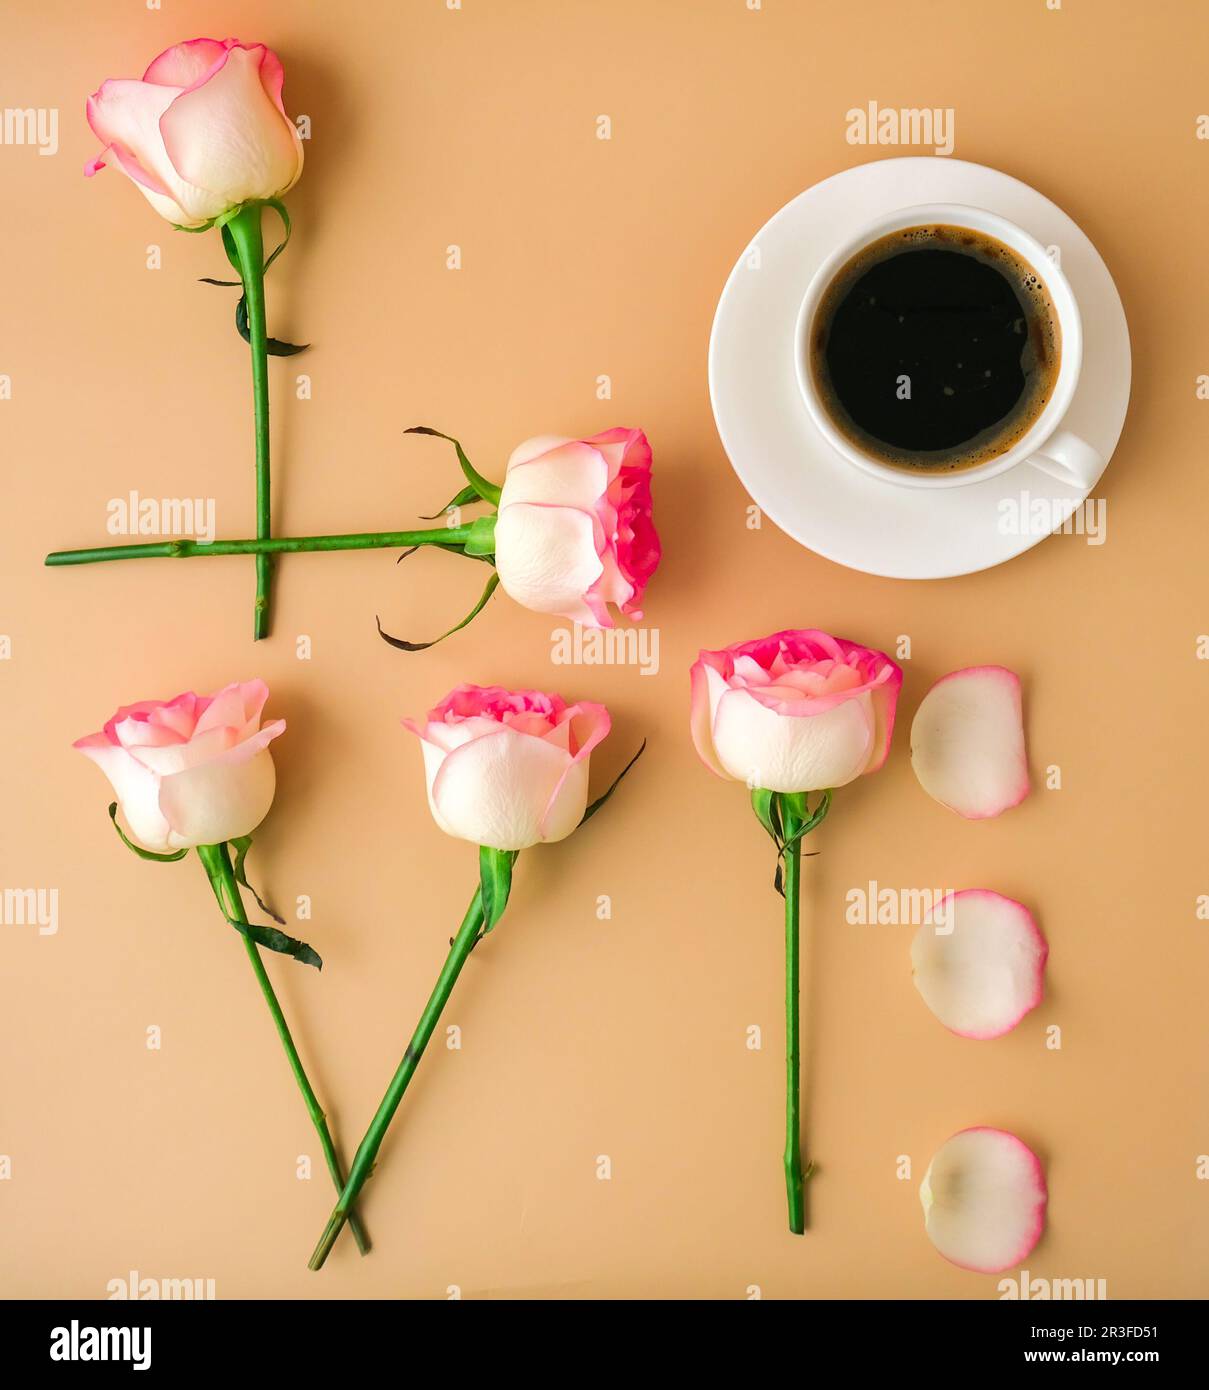 Mot AMOUR fait de fleurs roses rose tendre et tasse de café sur fond beige. Concept d'amour. Pose à plat. Composition minimale. ROM Banque D'Images